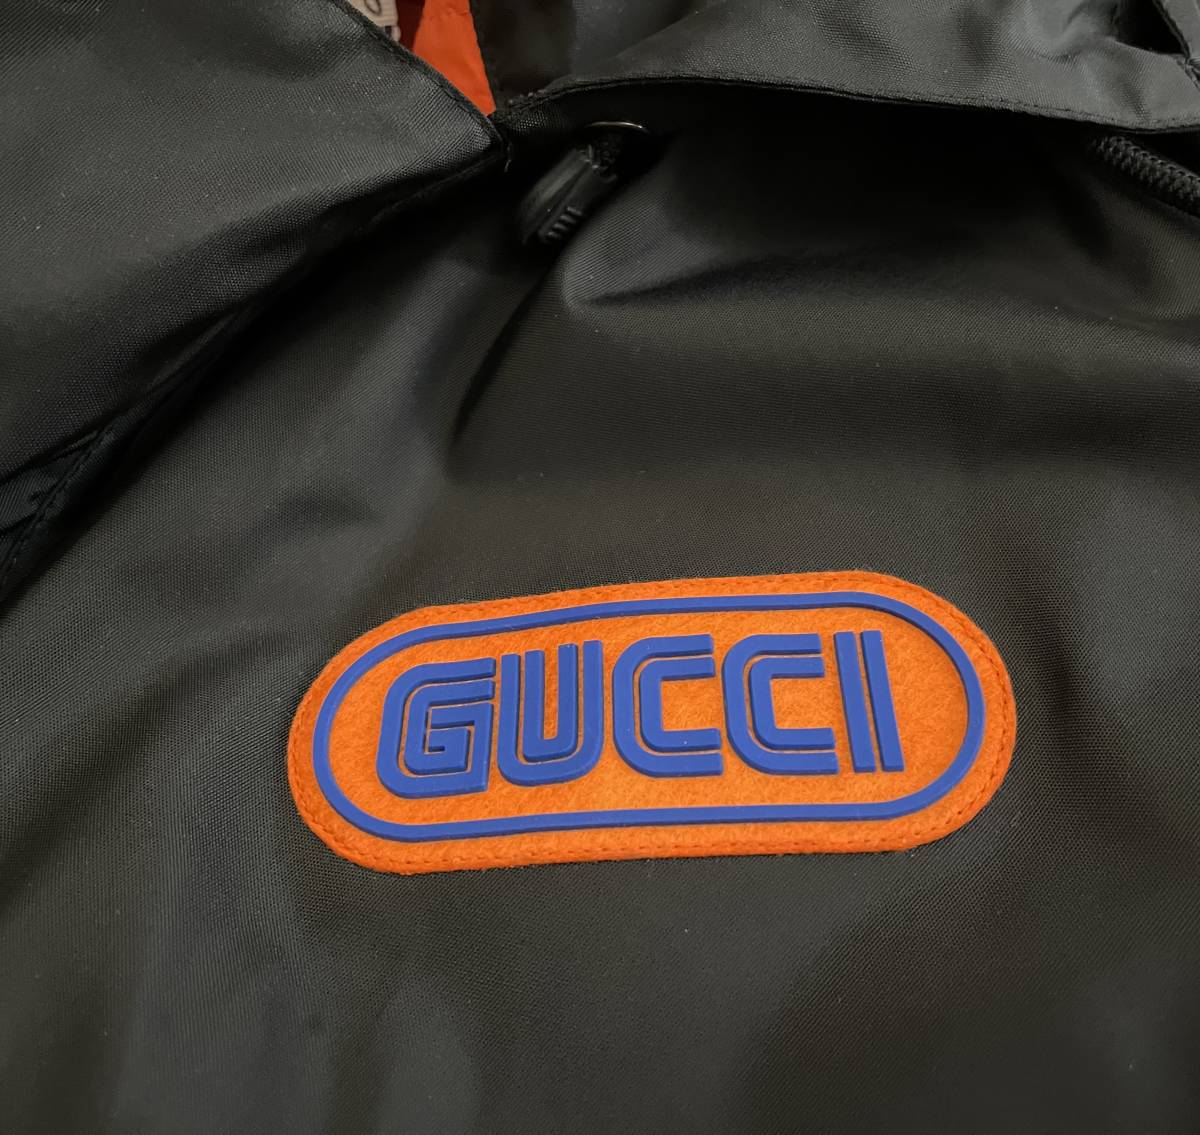 GUCCI Sega Gucci нейлон пальто котороткое пальто мужской акционерное общество ke кольцо Japan Gucci подразделение 46 внутренний стандартный товар внешний блузон SEGA